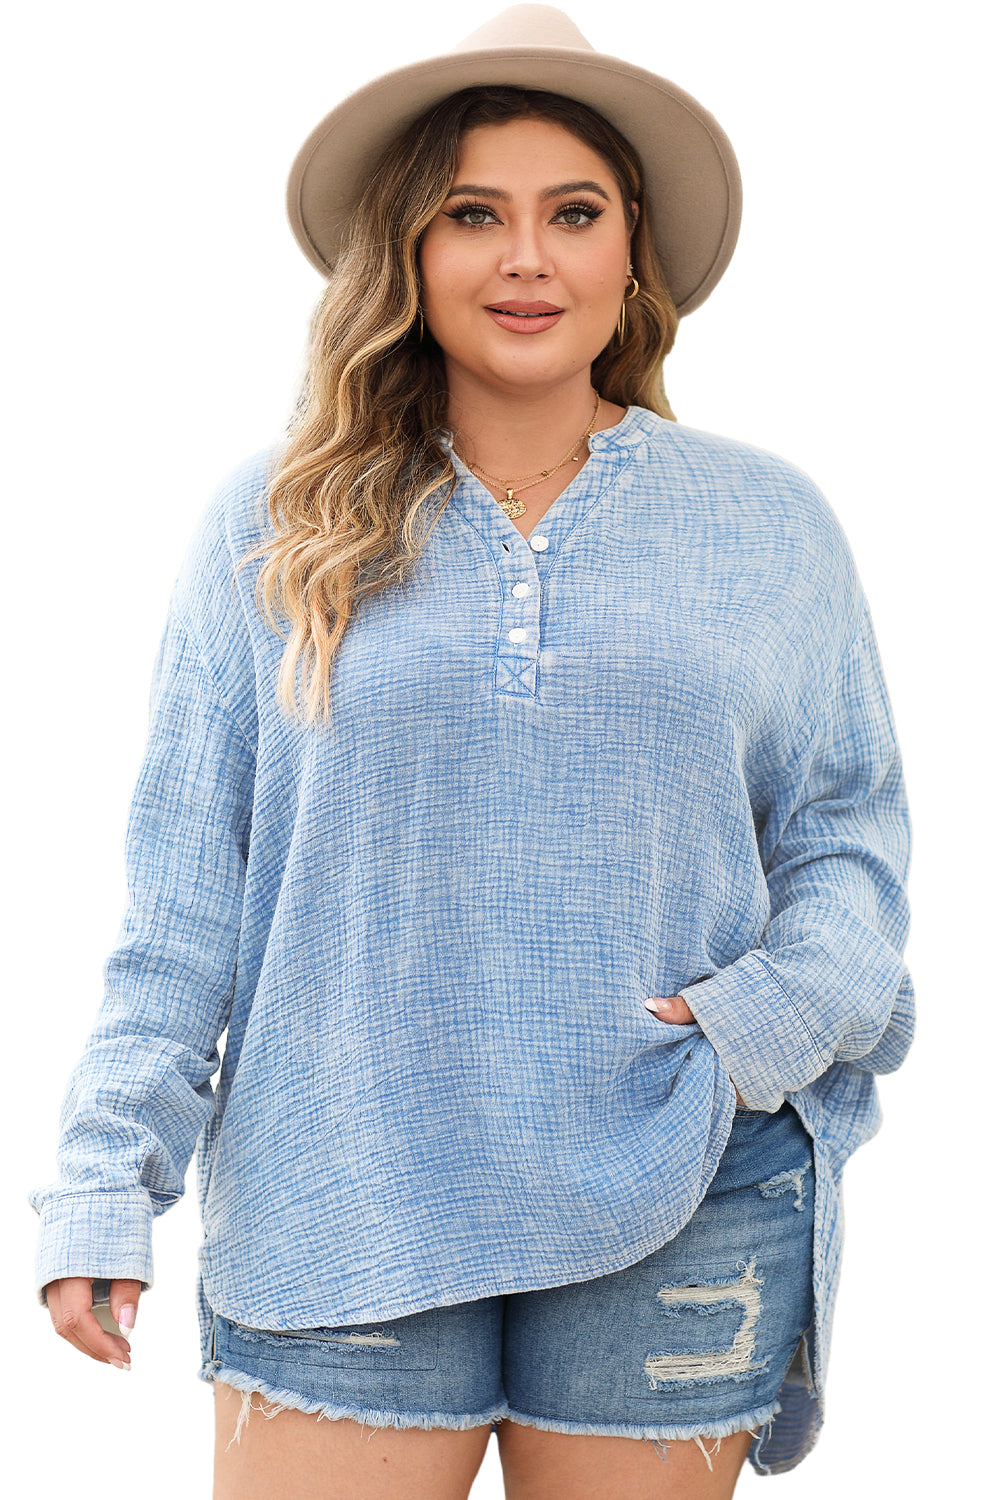 Hellblaue Plus-Size-Bluse in Knitteroptik mit geteiltem Ausschnitt und Knöpfen